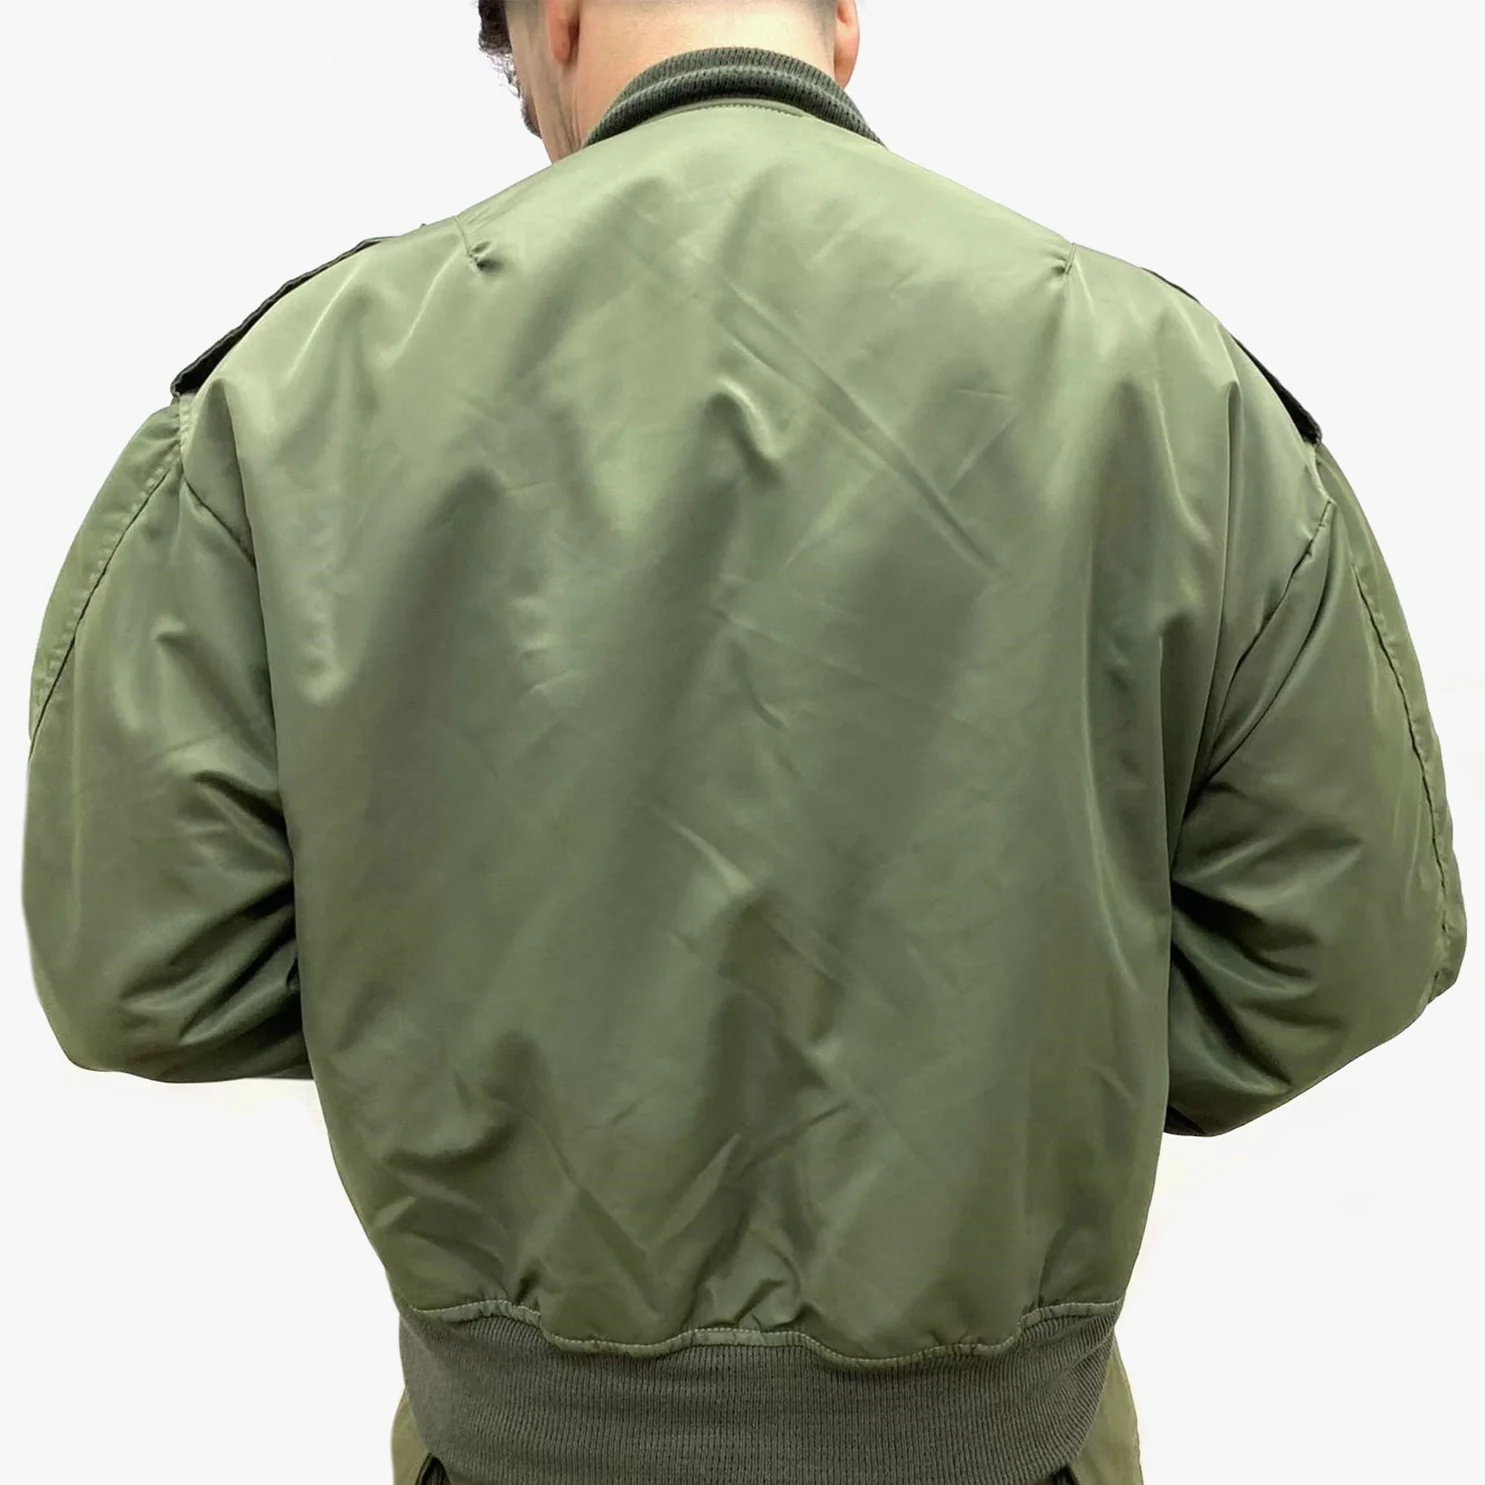 IDF Pilot Coat